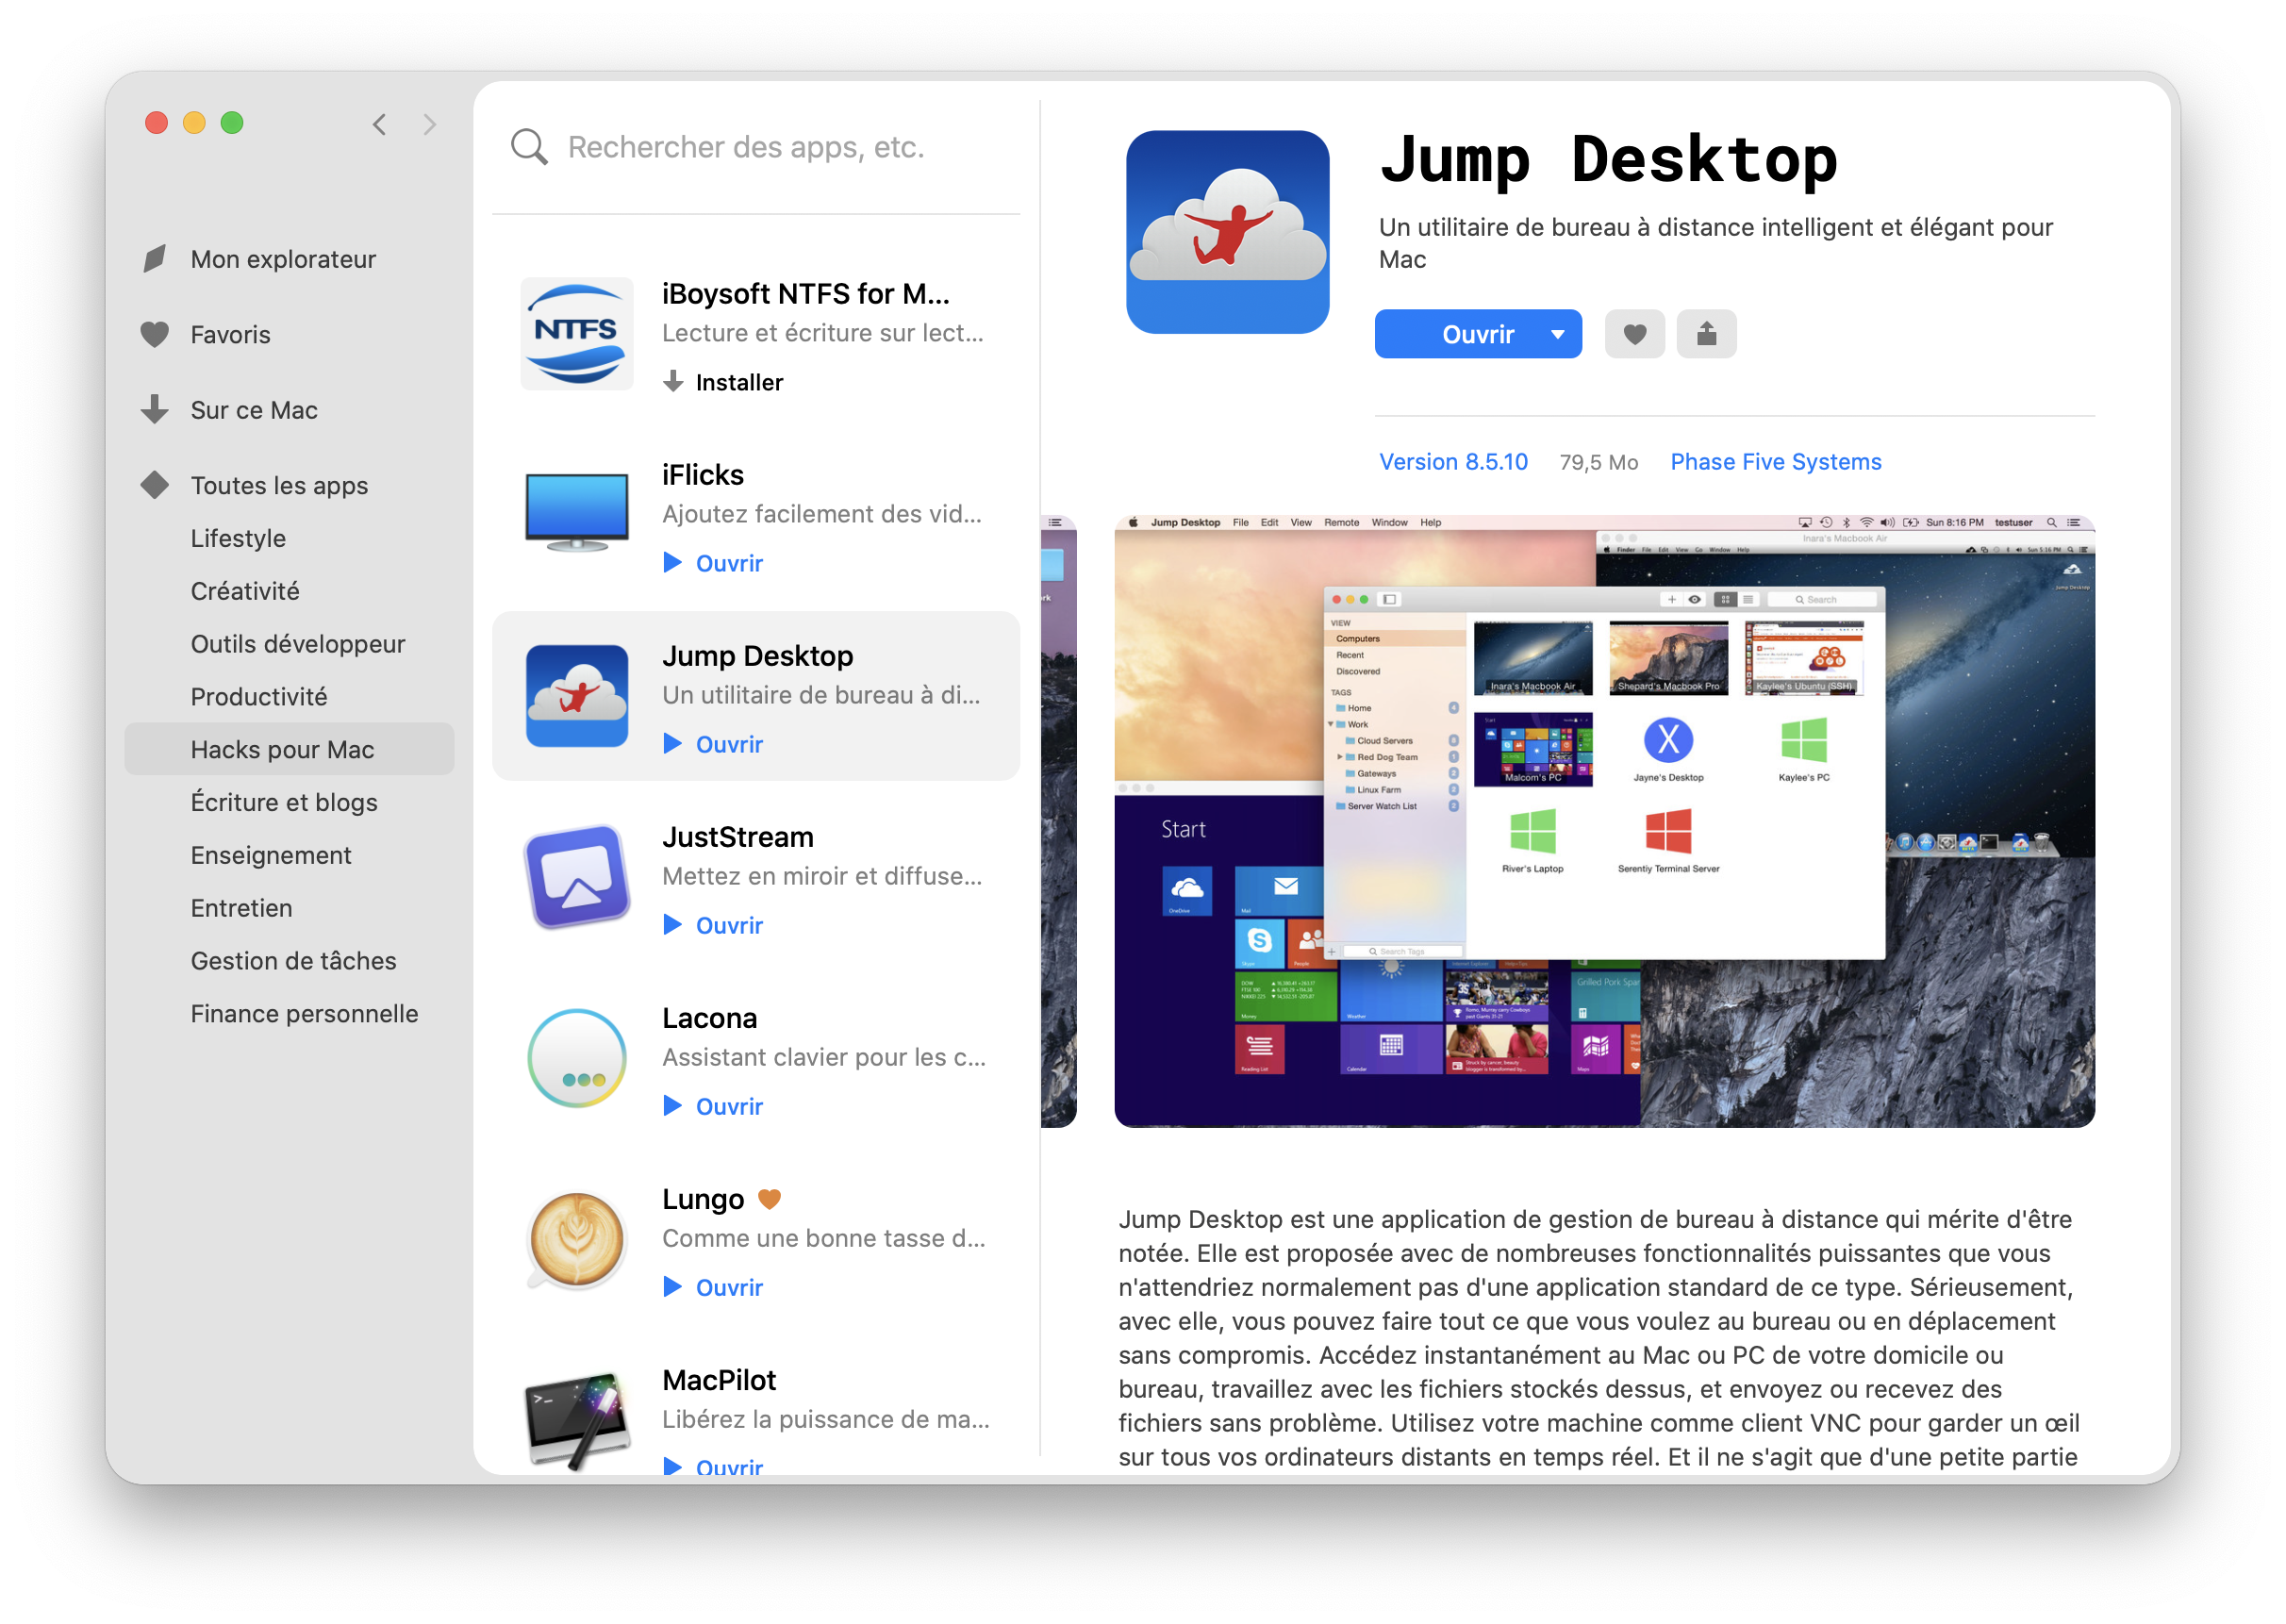 is jump desktop secure